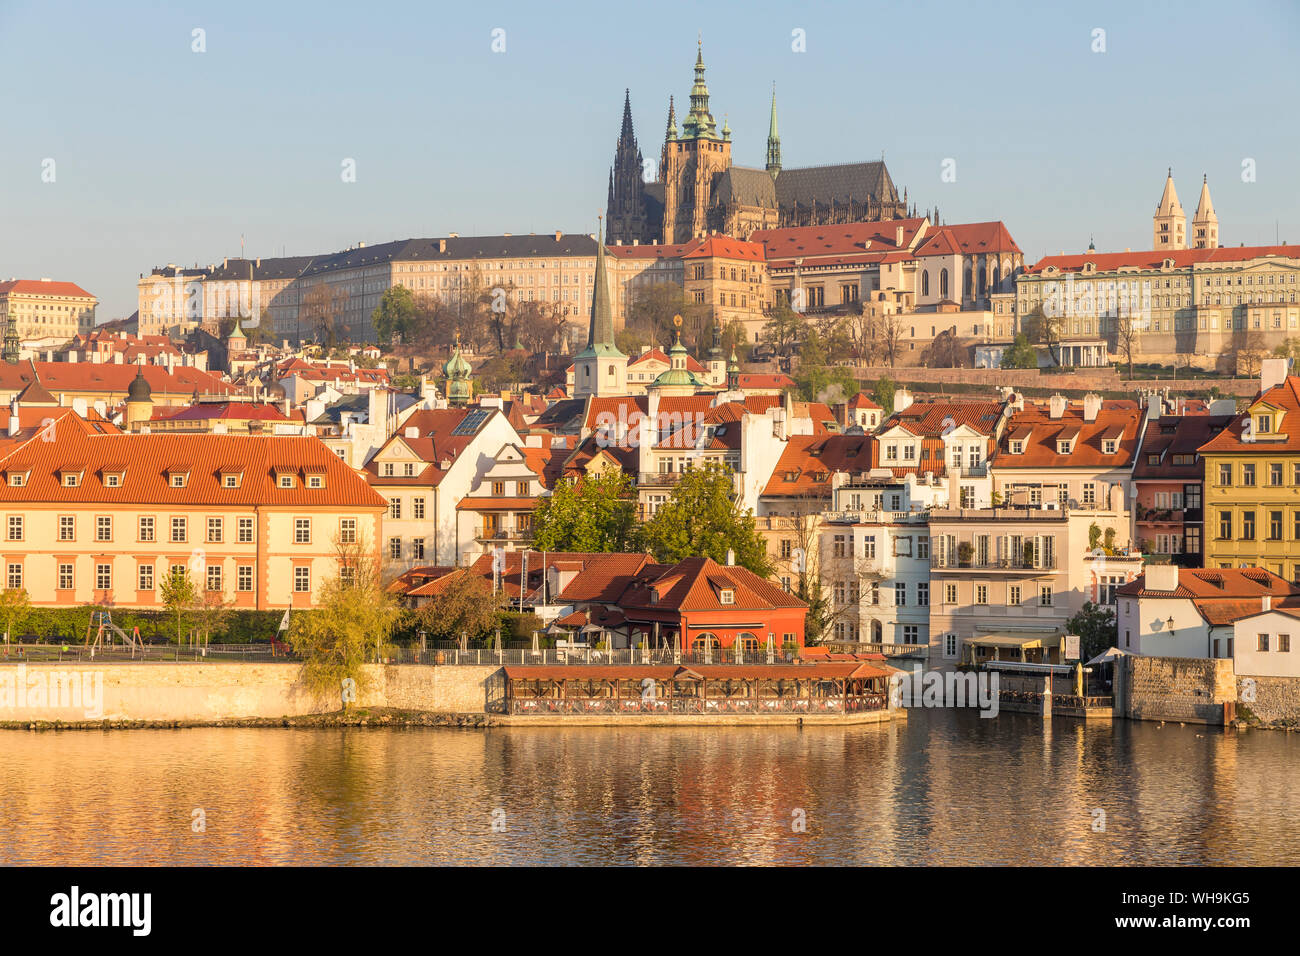 Vue depuis les rives de la rivière Vltava dans le quartier de Mala Strana, le château de Prague et cathédrale Saint-Guy, l'UNESCO, Prague, République Tchèque Banque D'Images